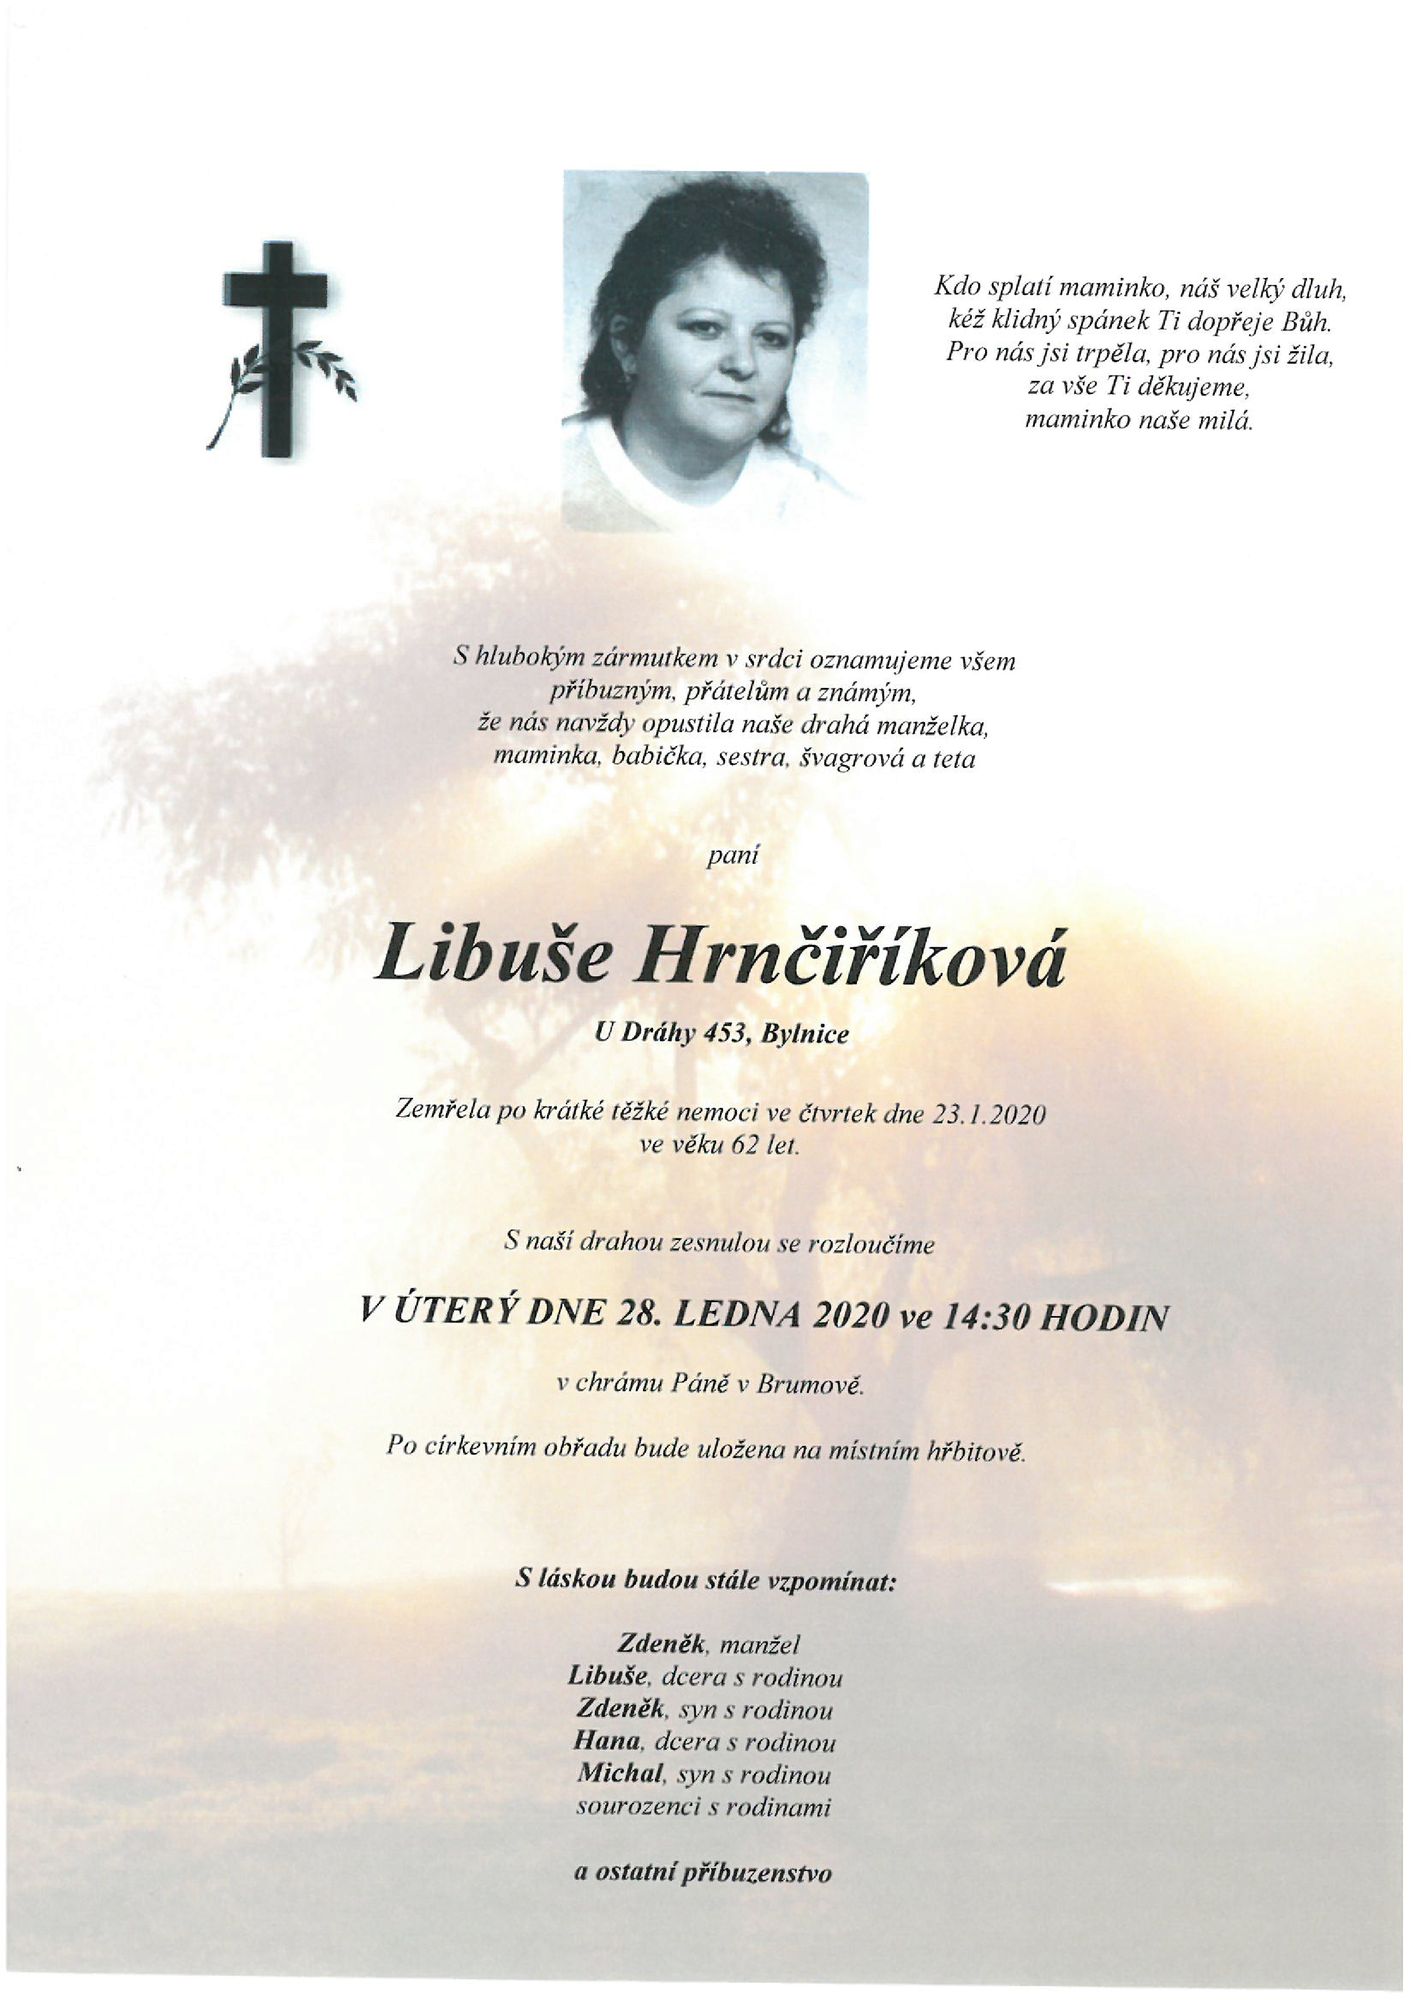 Libuše Hrnčiříková